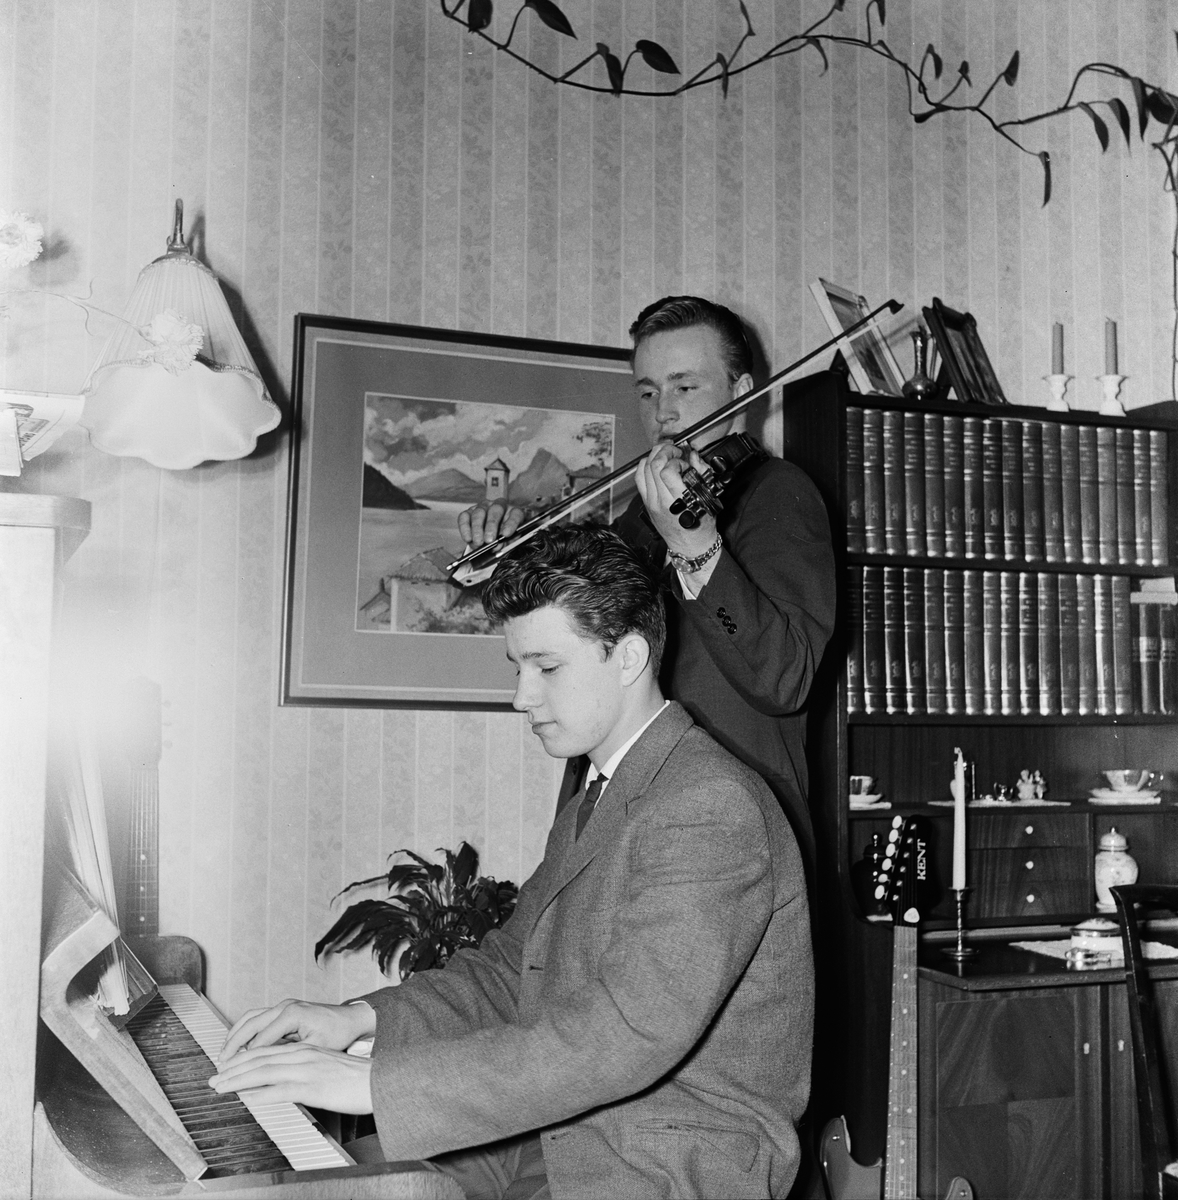 Ledin spelar fiol och en kamrat sitter vid pianot och spelar.